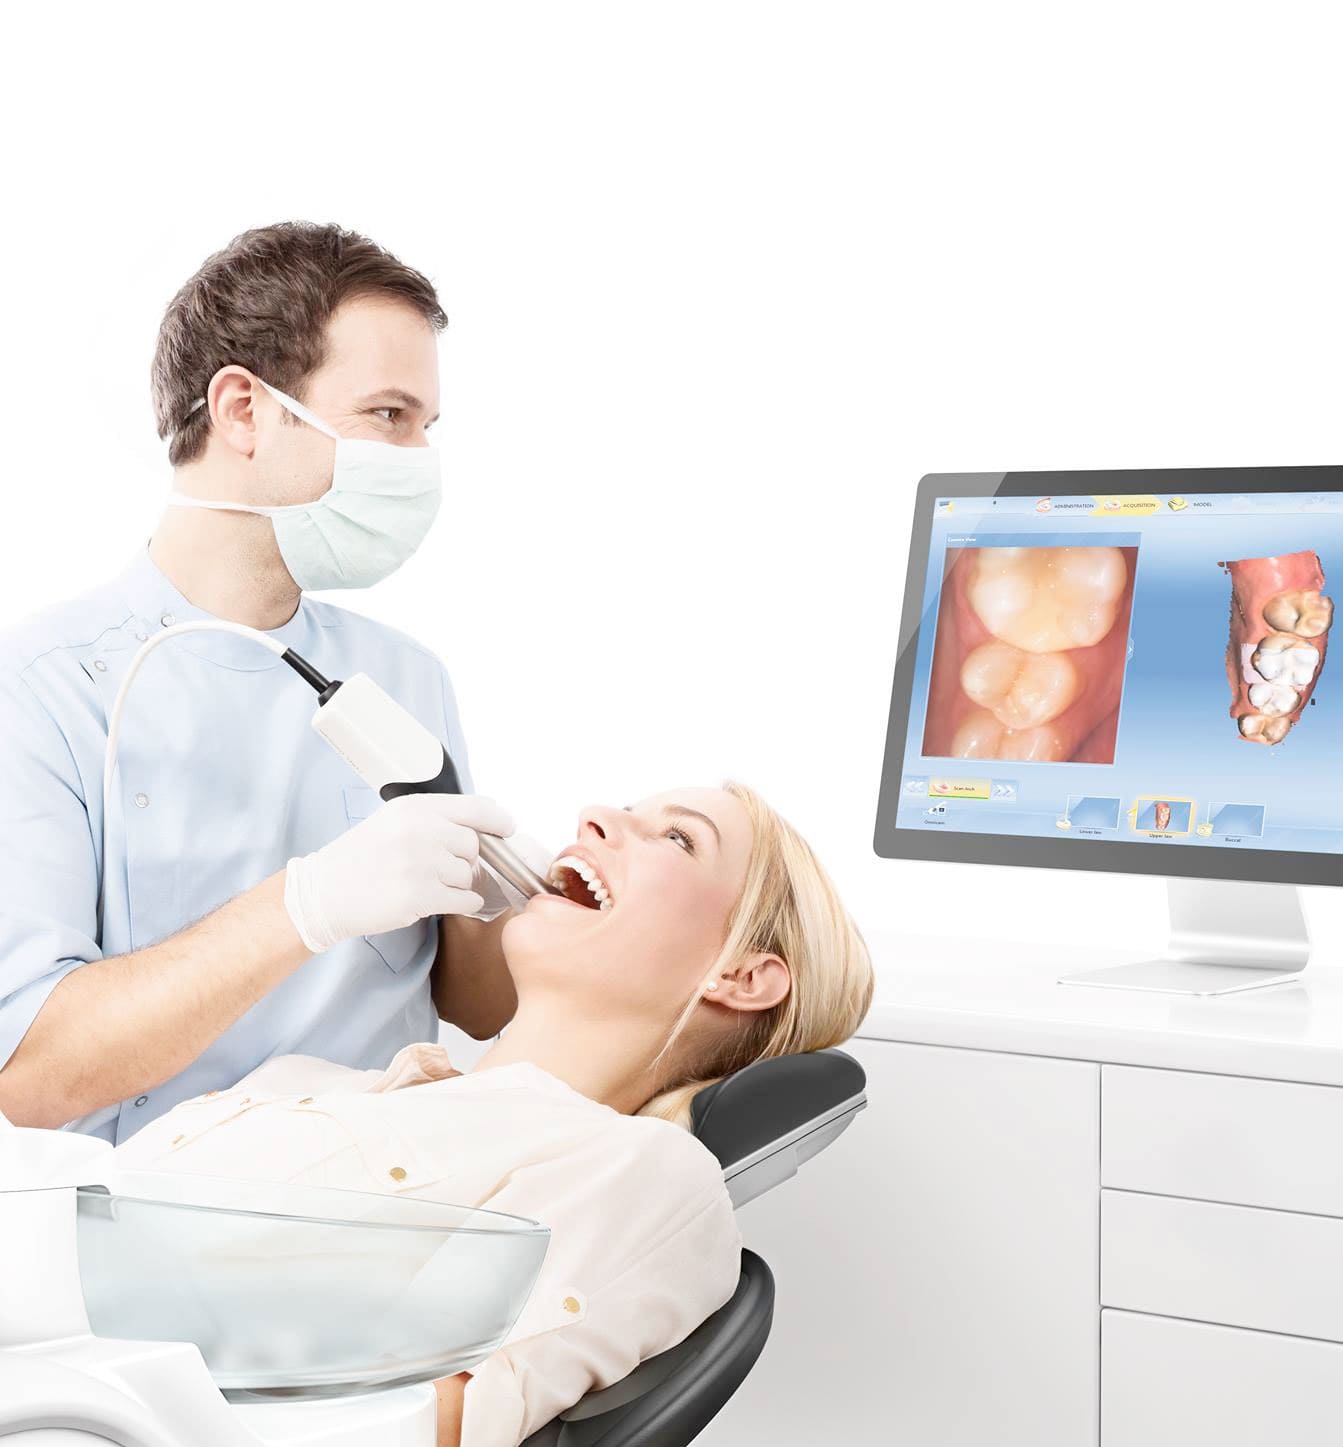 דימות אבחון שיניים עם אולטרסאונד הוא ללא כאבים, במחיר סביר, לא פולשני, ואין לו תופעות לוואי ידועות.